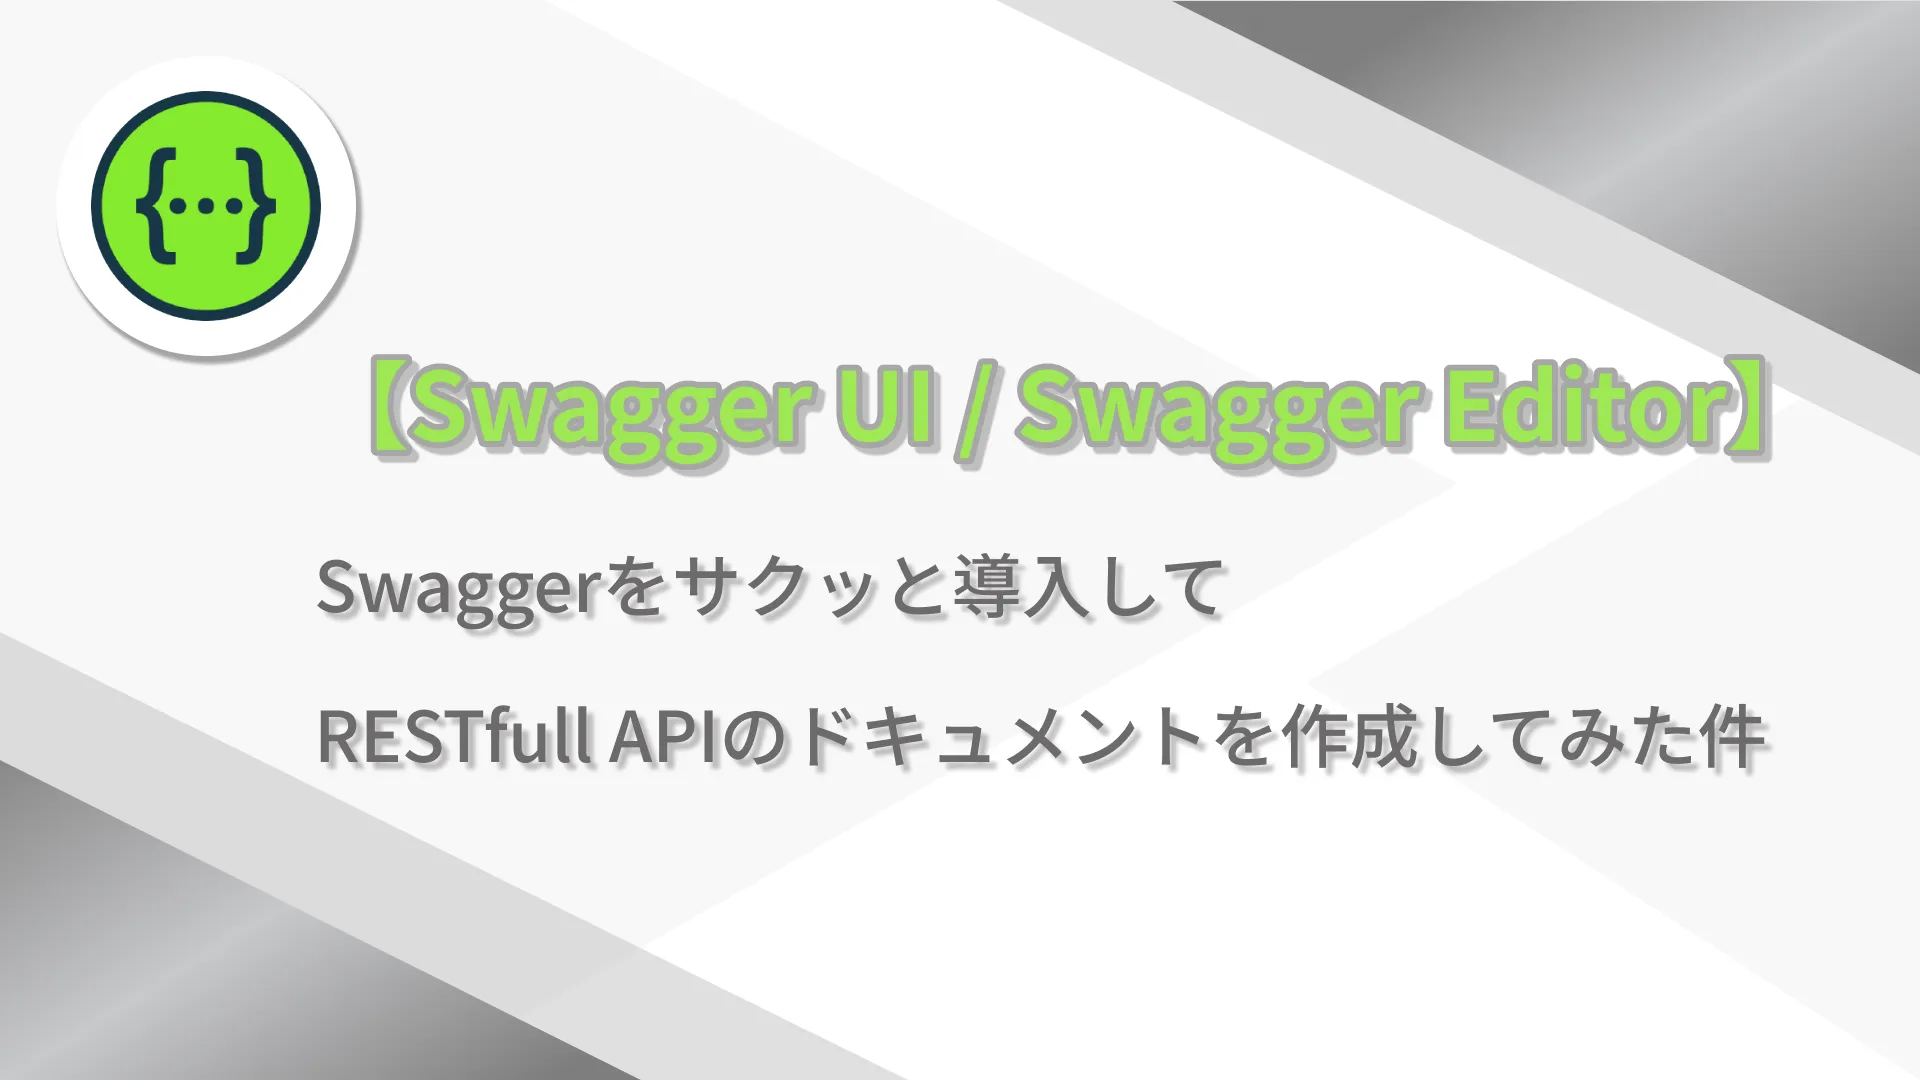 【Swagger UI / Swagger Editor】Swaggerをサクッと導入してRESTfull APIのドキュメントを作成してみた件